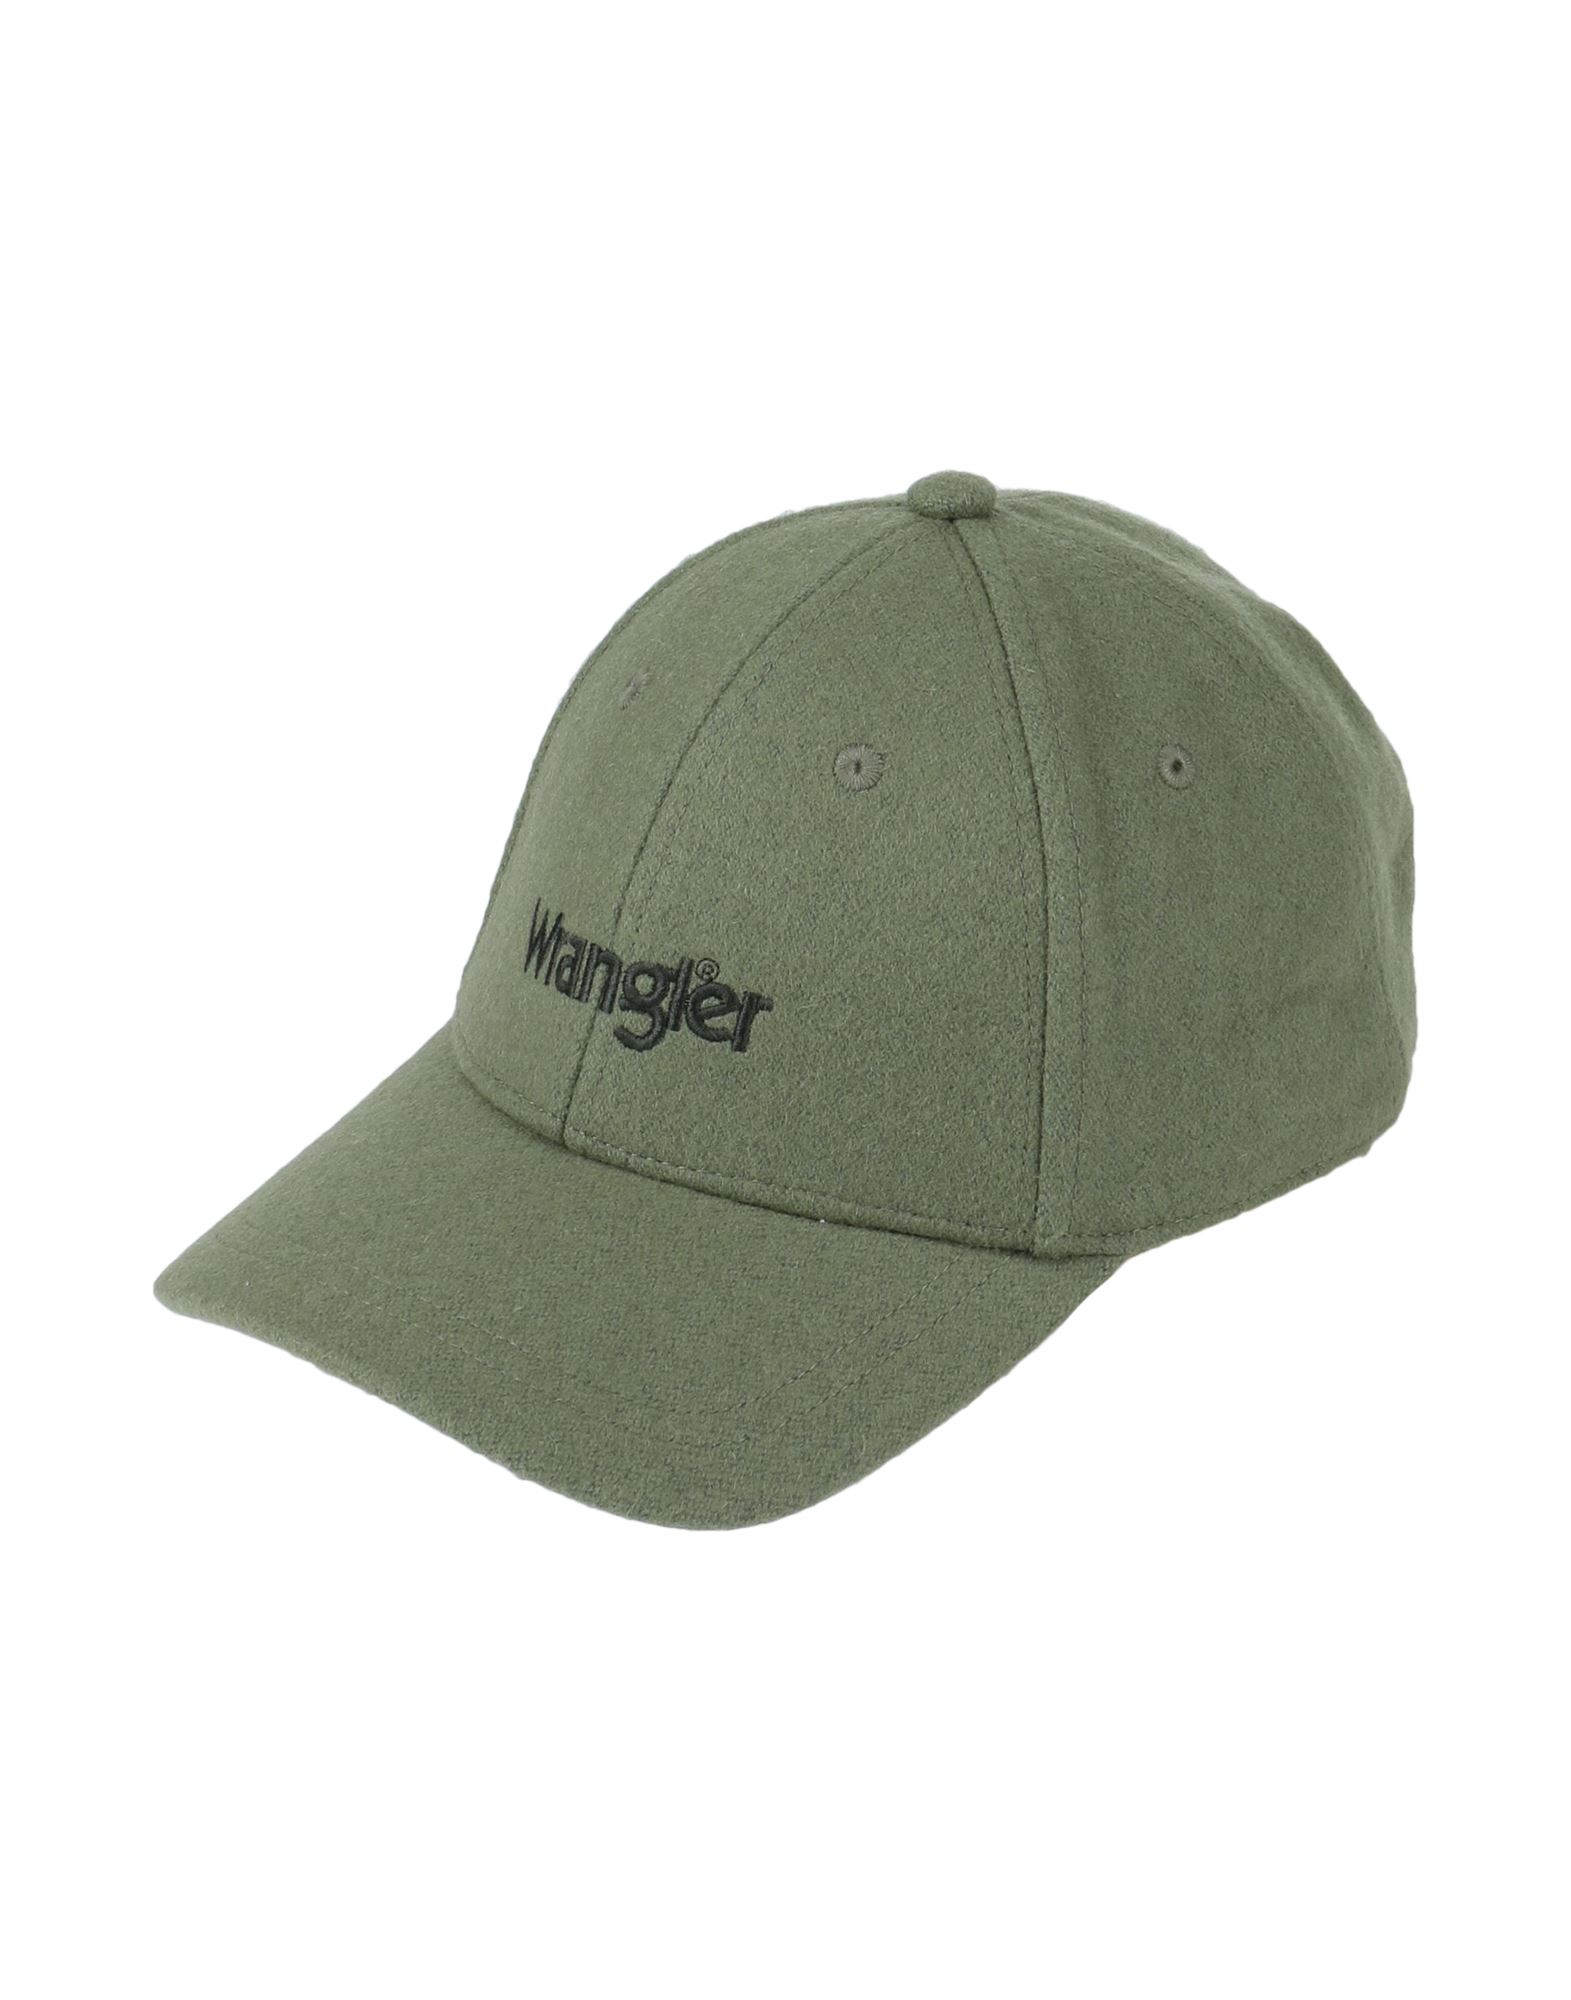 ラングラー(Wrangler) メンズ帽子・キャップ | 通販・人気ランキング